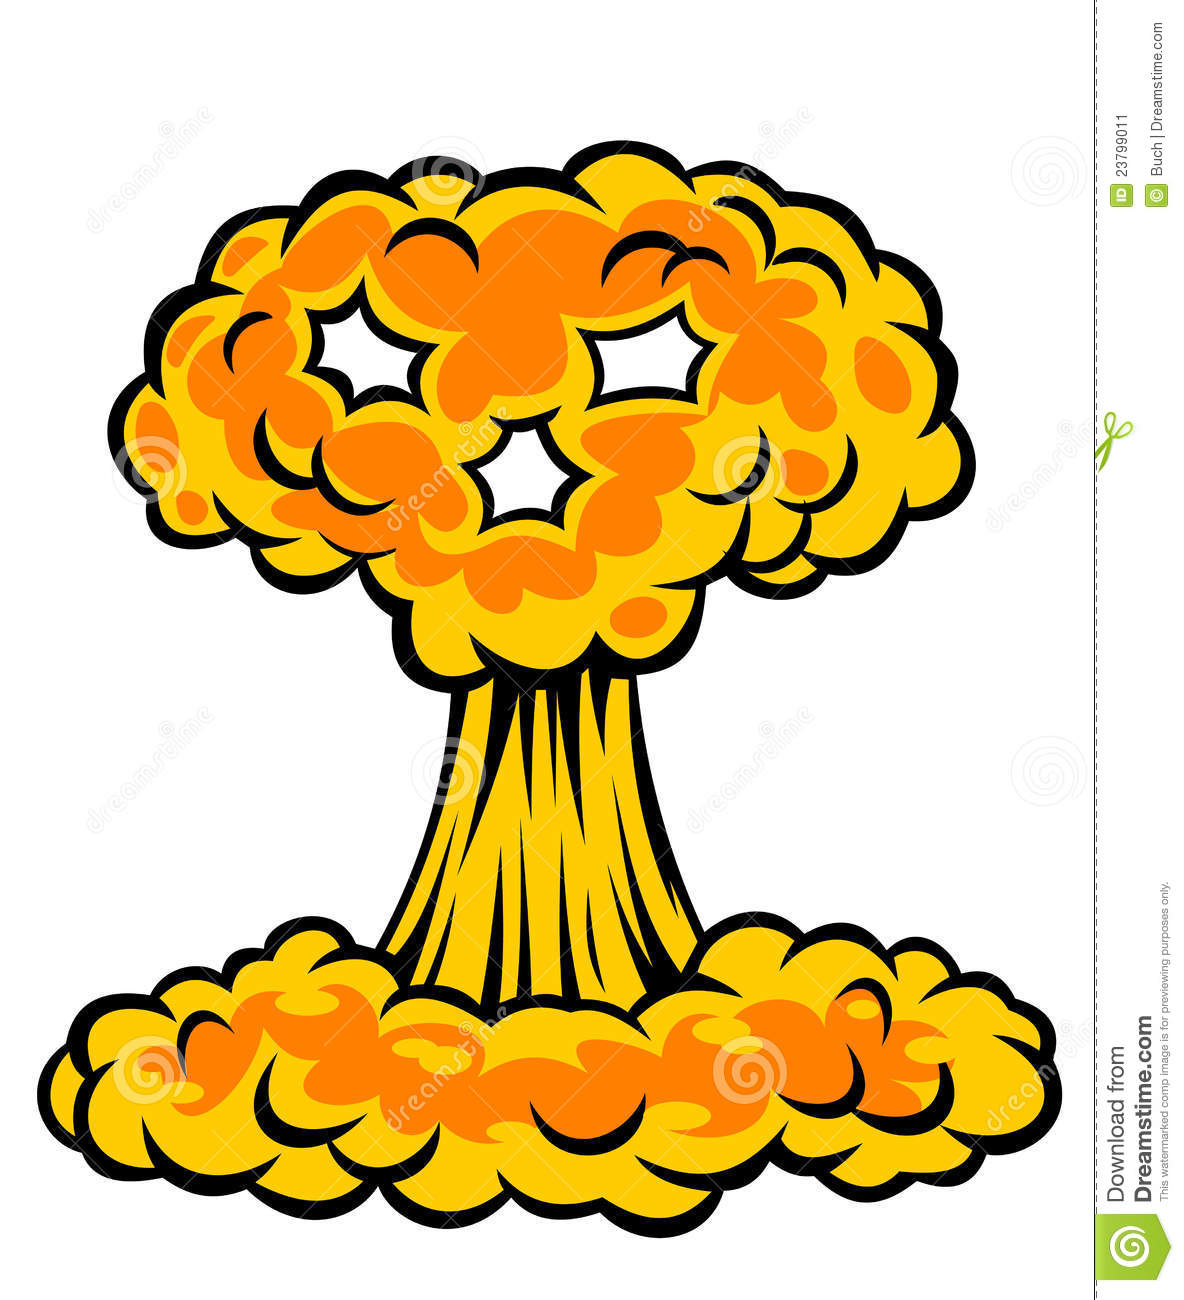 Explosion Clipart Nuclear Explosion 23799011 Jpg